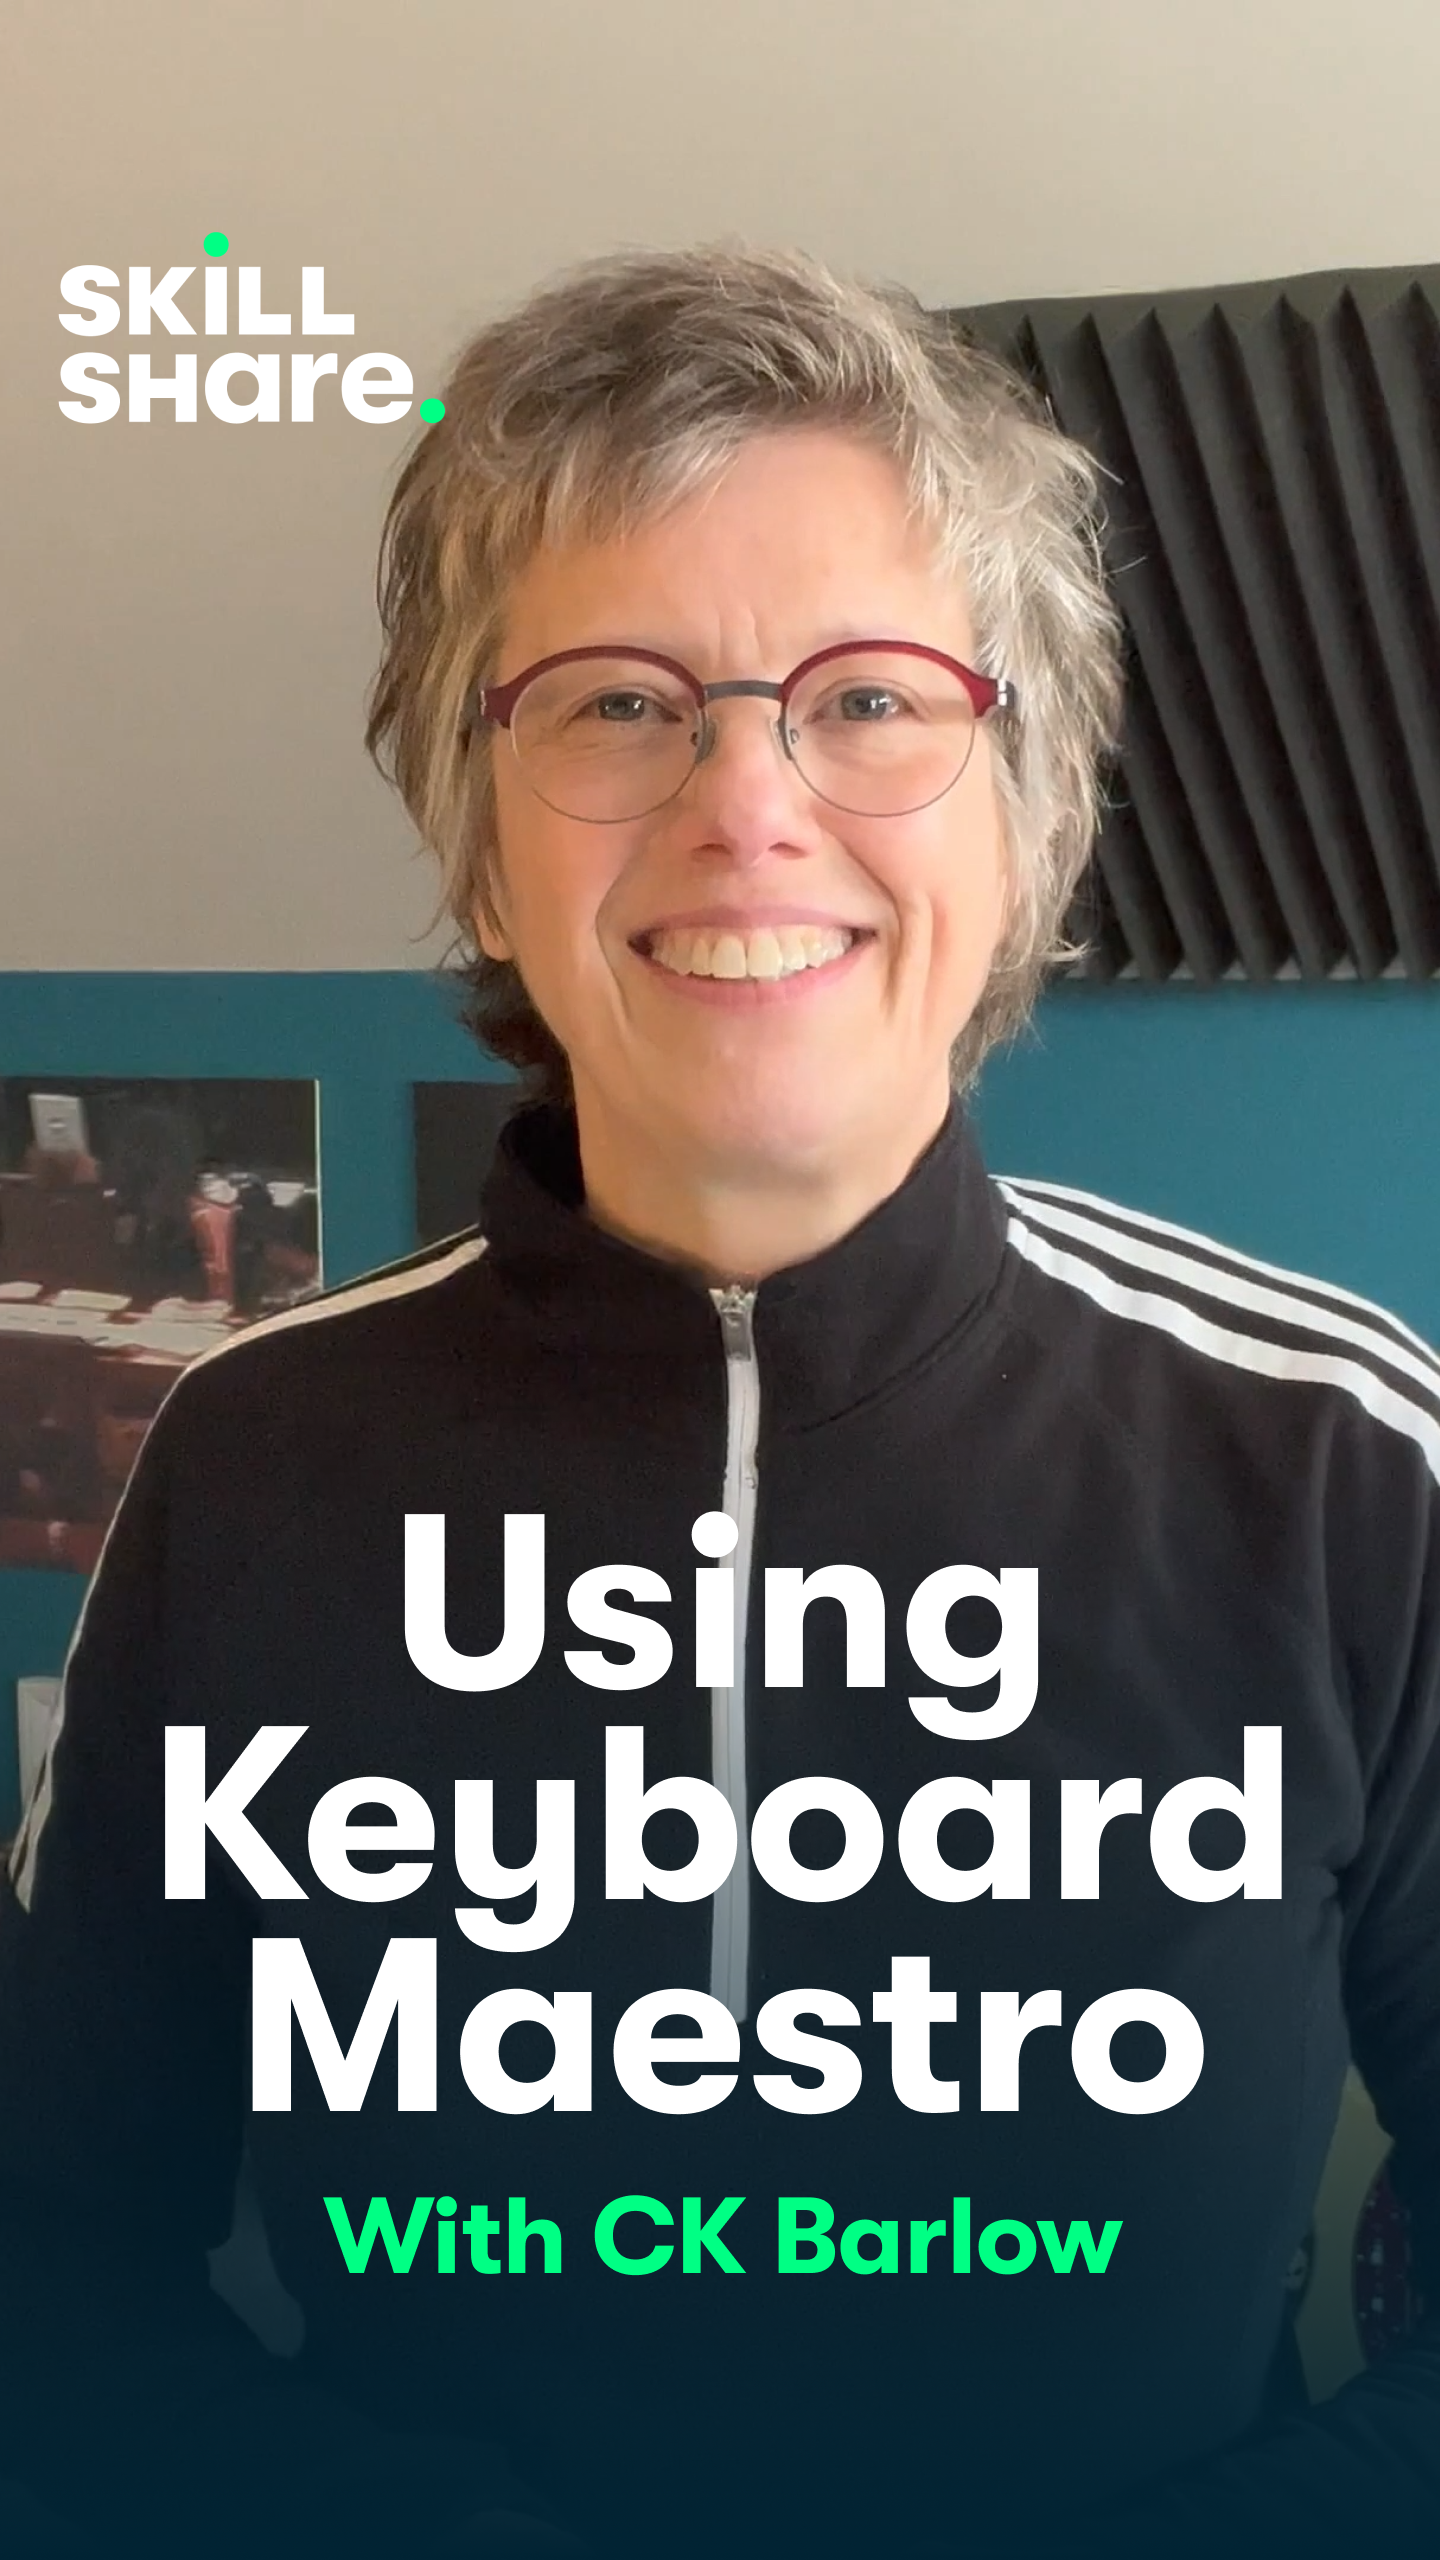 Skillshare: Using Keyboard Maestro